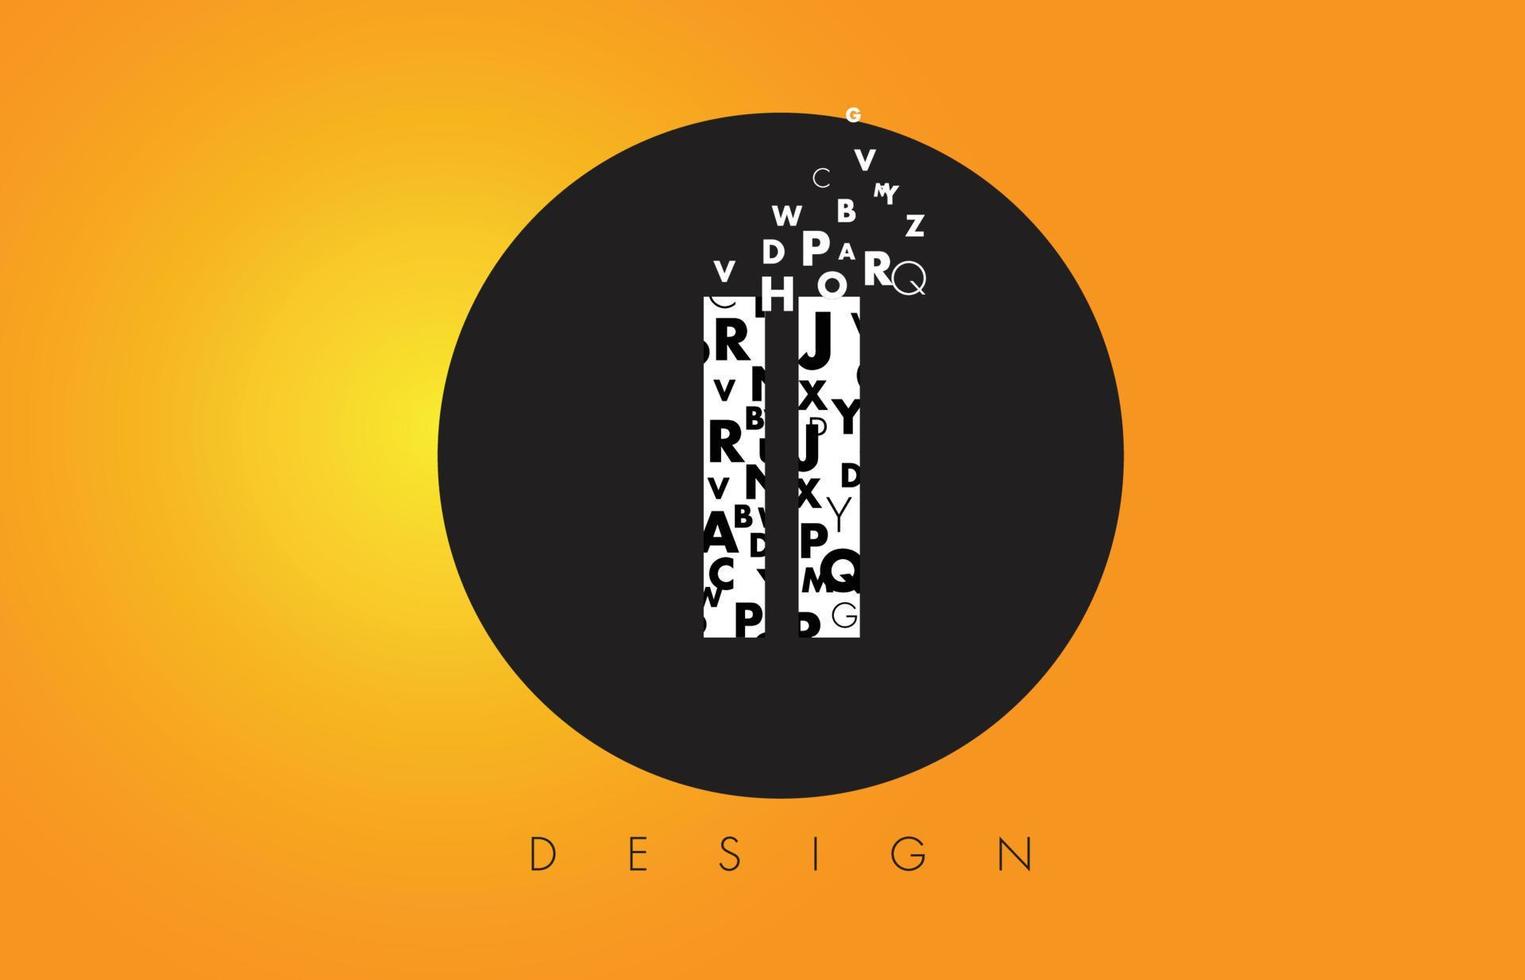 ii ii-logo gemaakt van kleine letters met zwarte cirkel en gele achtergrond. vector